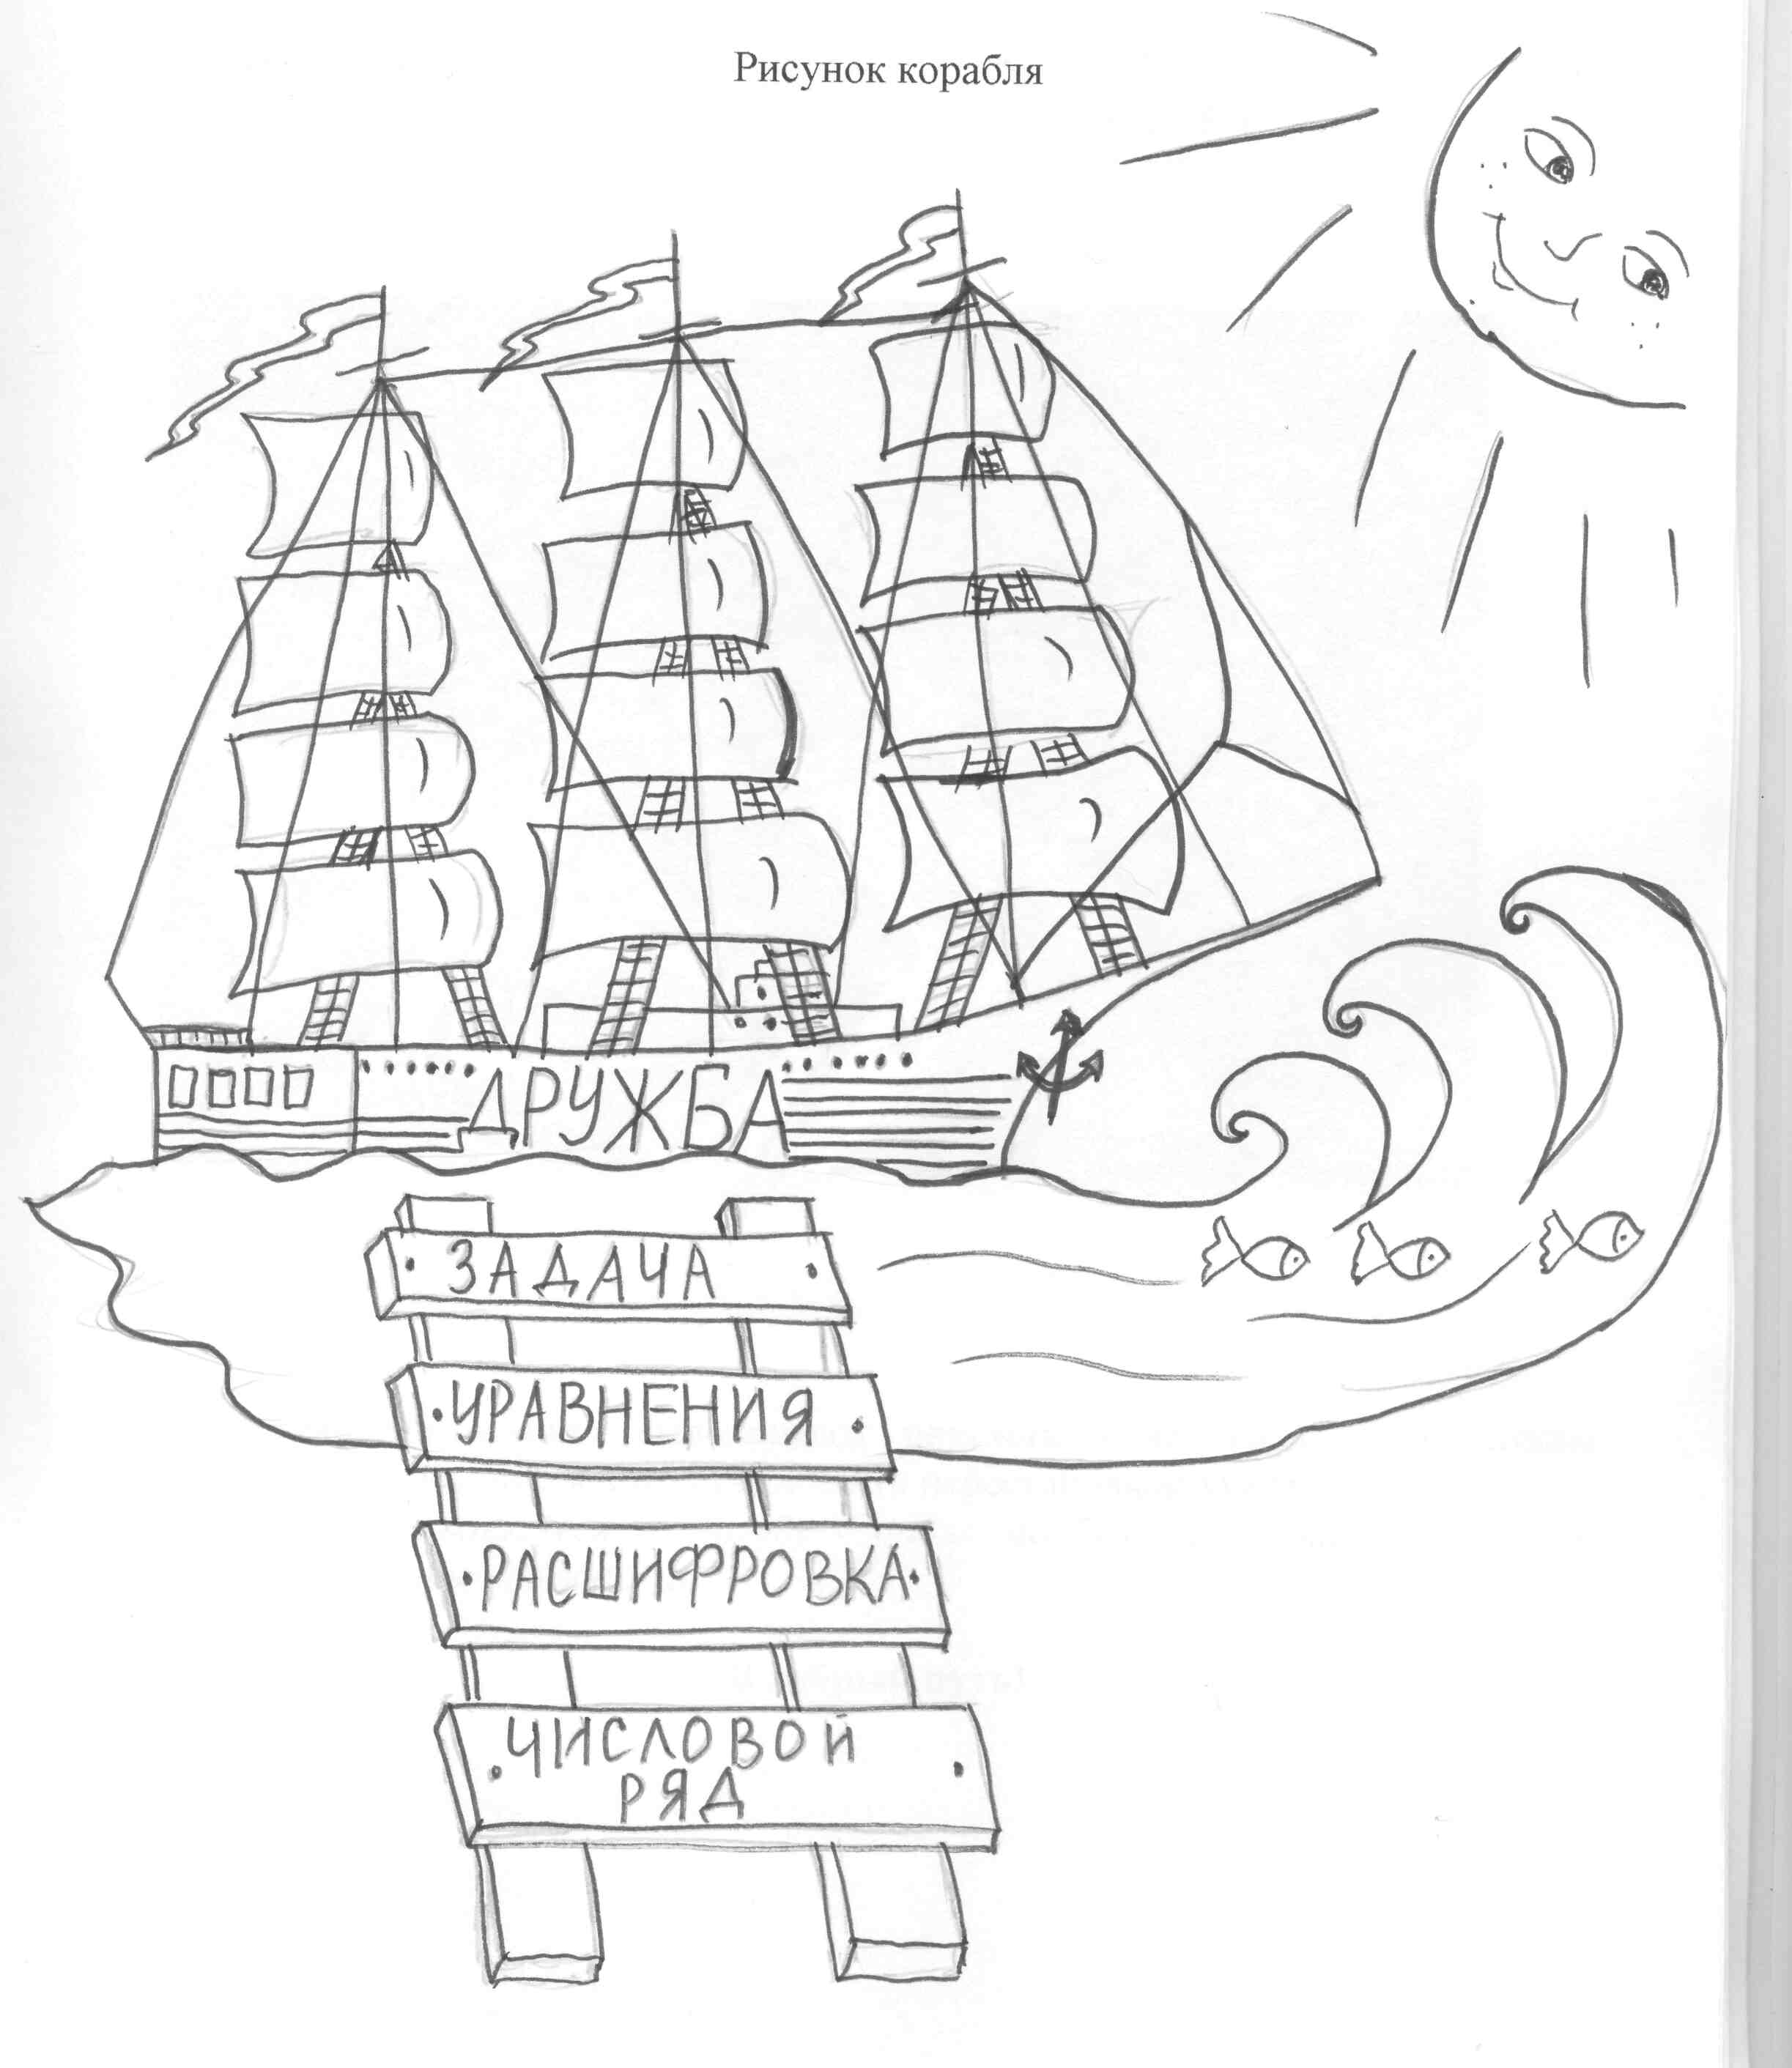 Название корабля рисунок